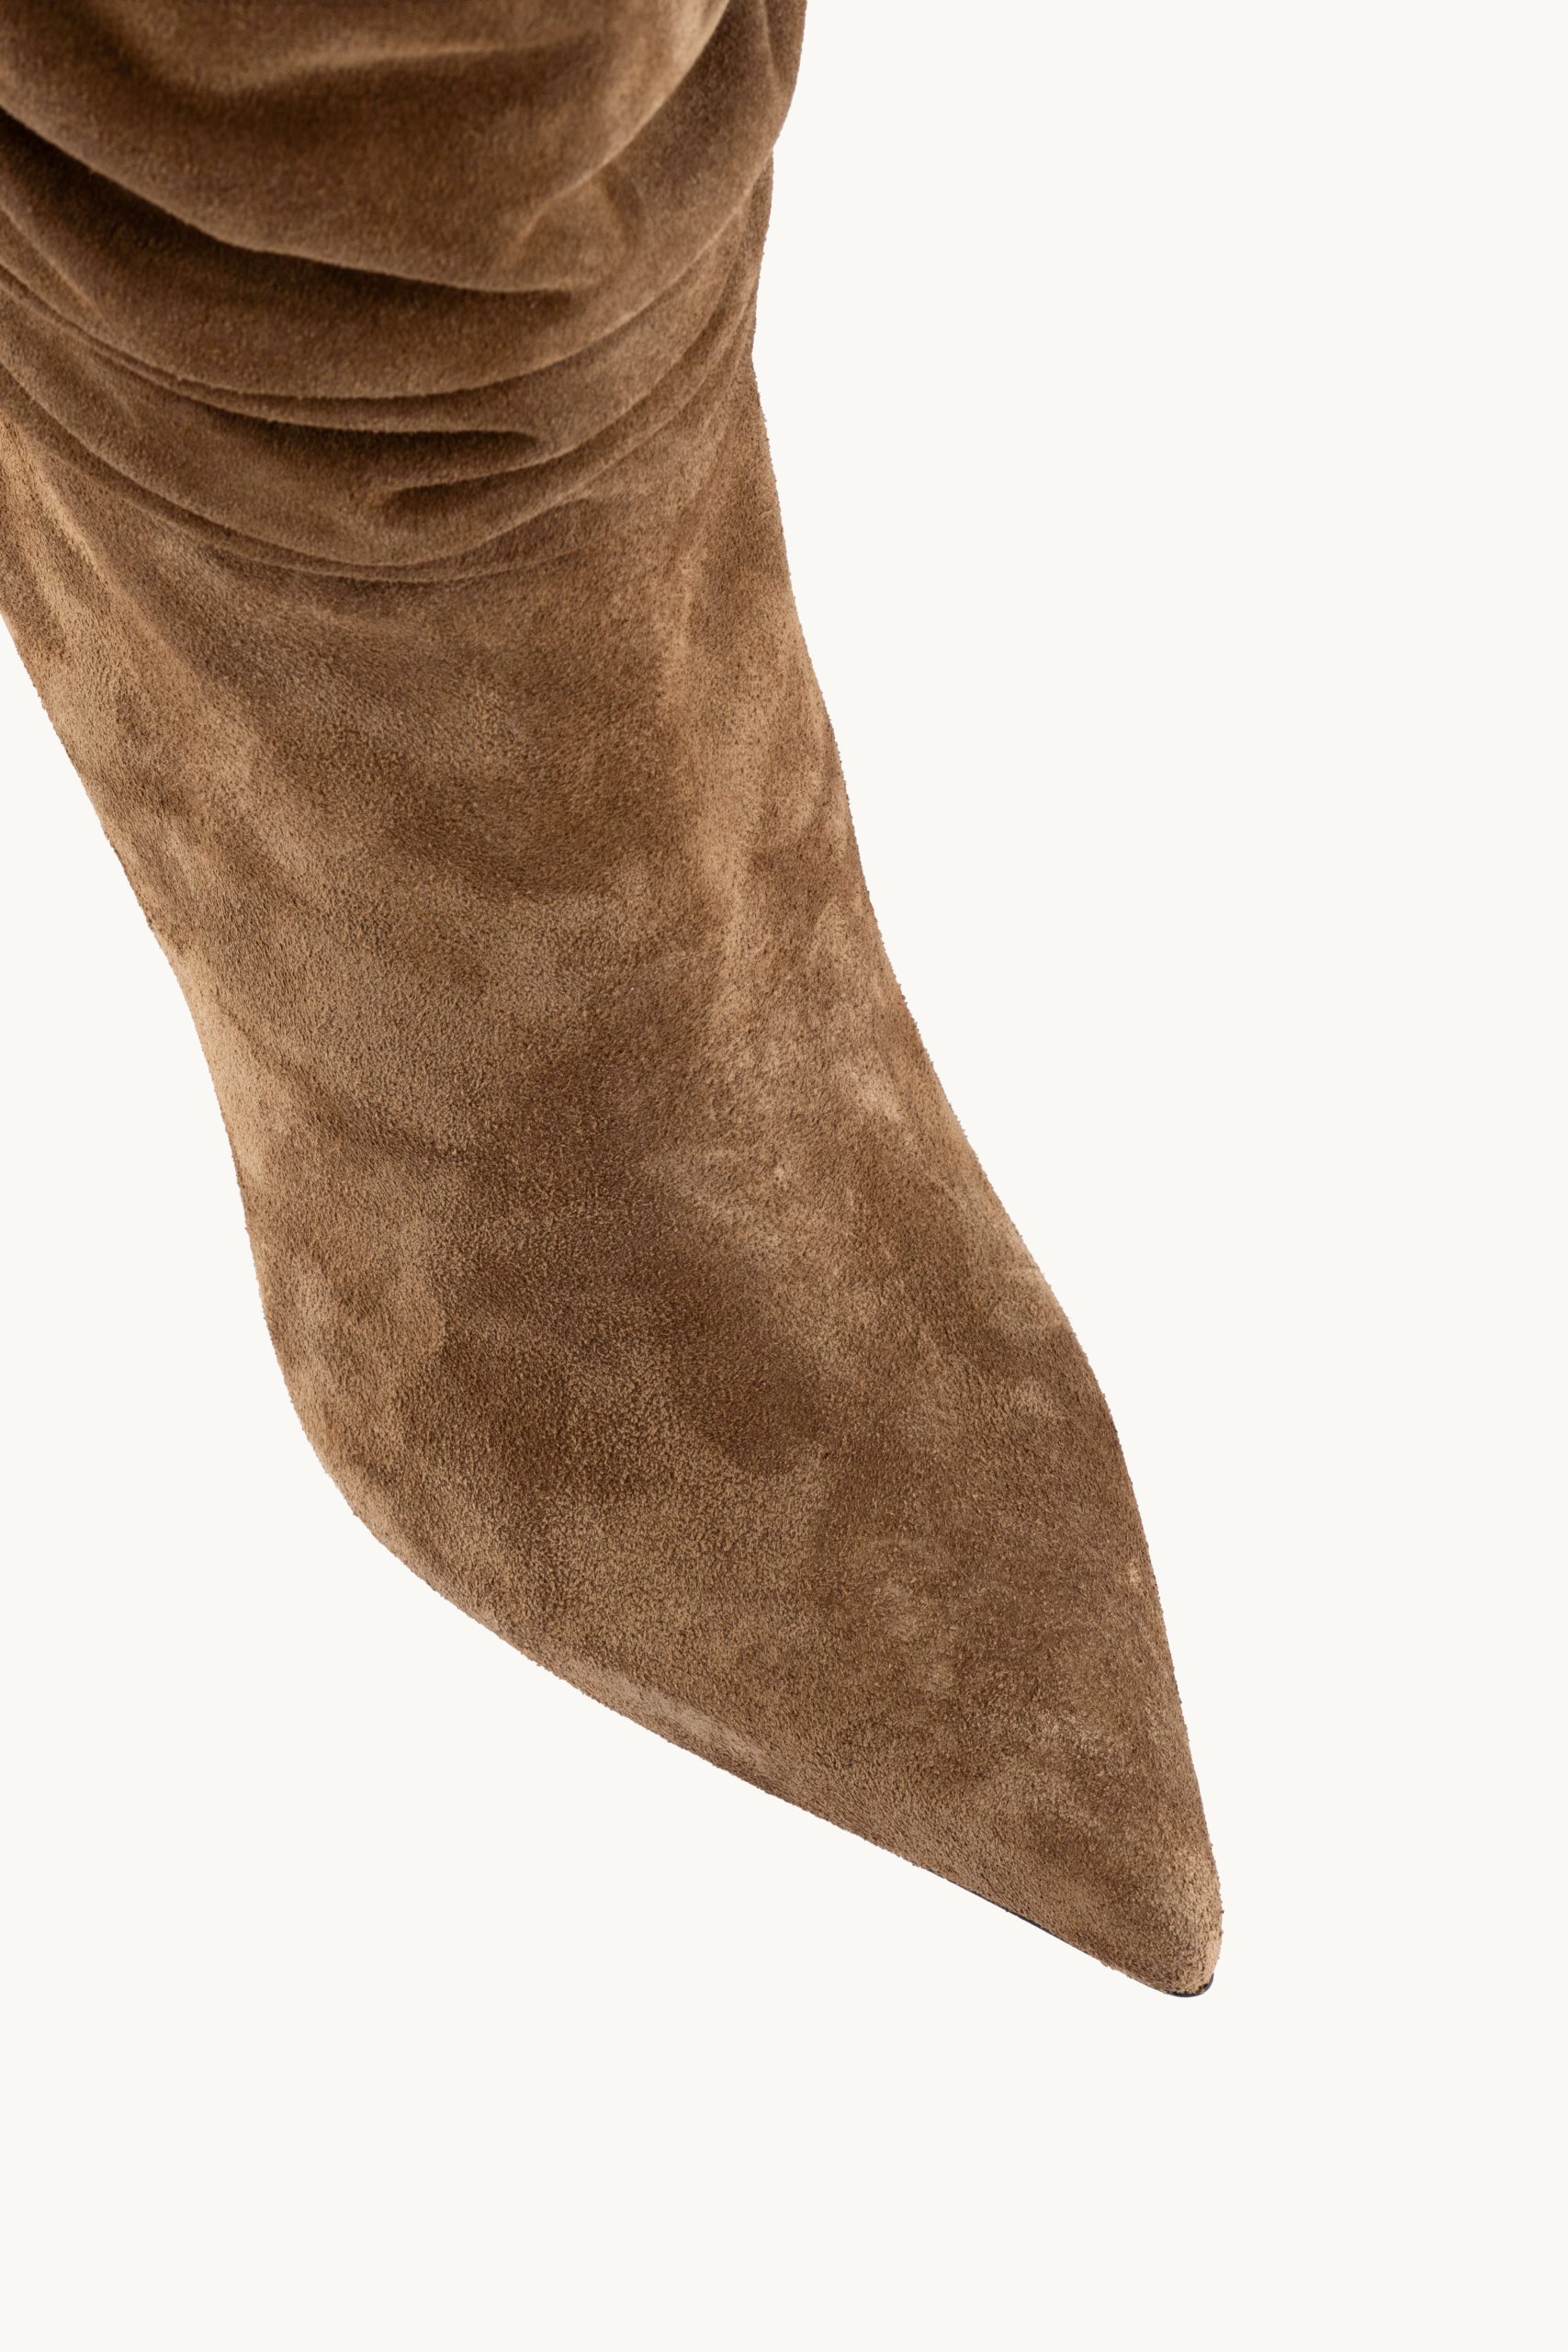 Kratke čižme - Mocha Excitement su špicaste čizme srednje visine od brušene kože sa naborima i tankom štiklom.